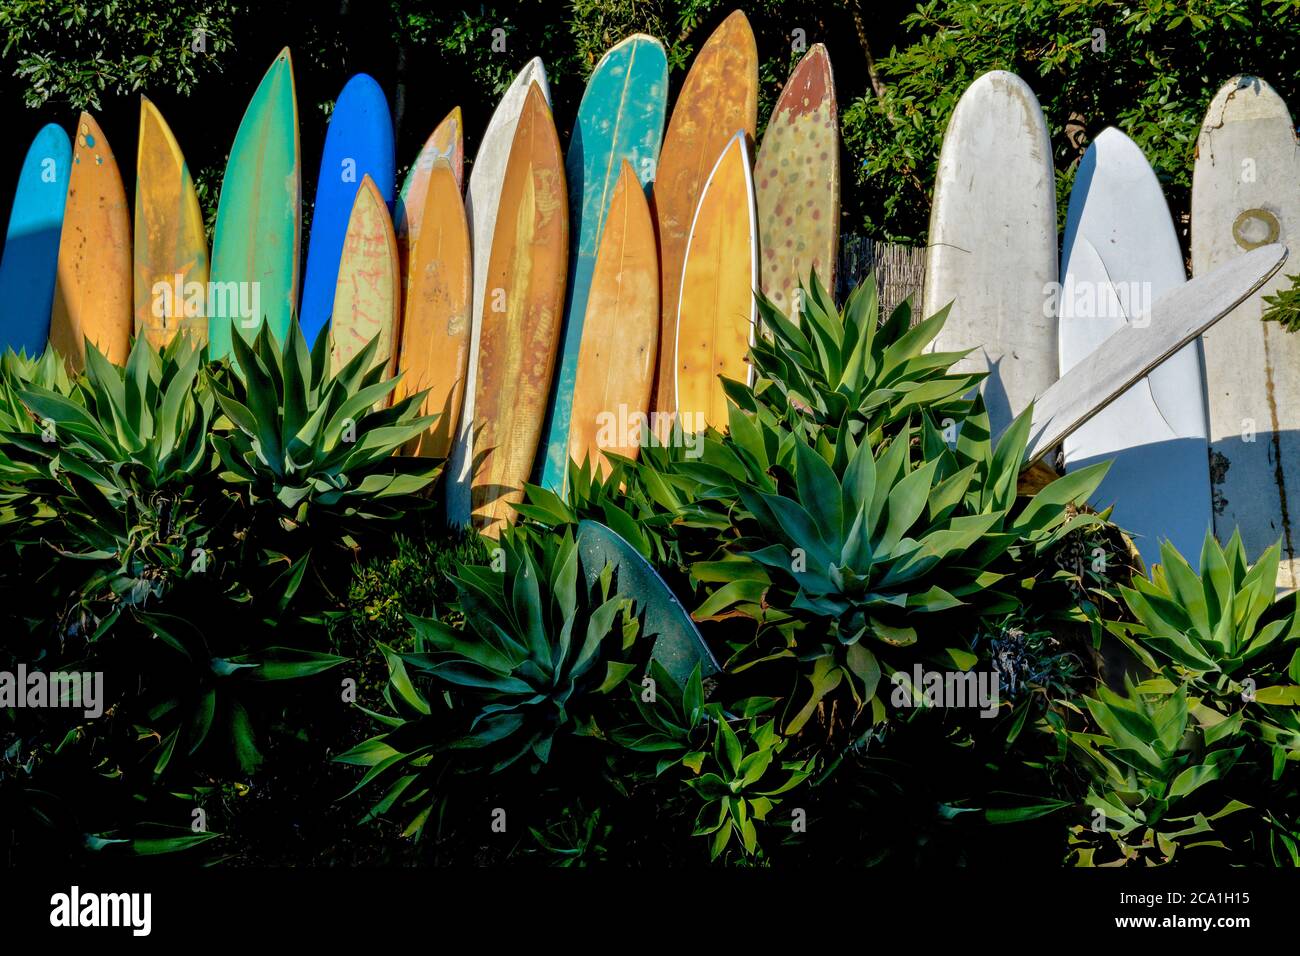 Una serie di tavole da surf in pensione, grugnose e vintage in un giardino di agave che mostra icone di cultura del surf a Santa Barbara, CA, USA Foto Stock